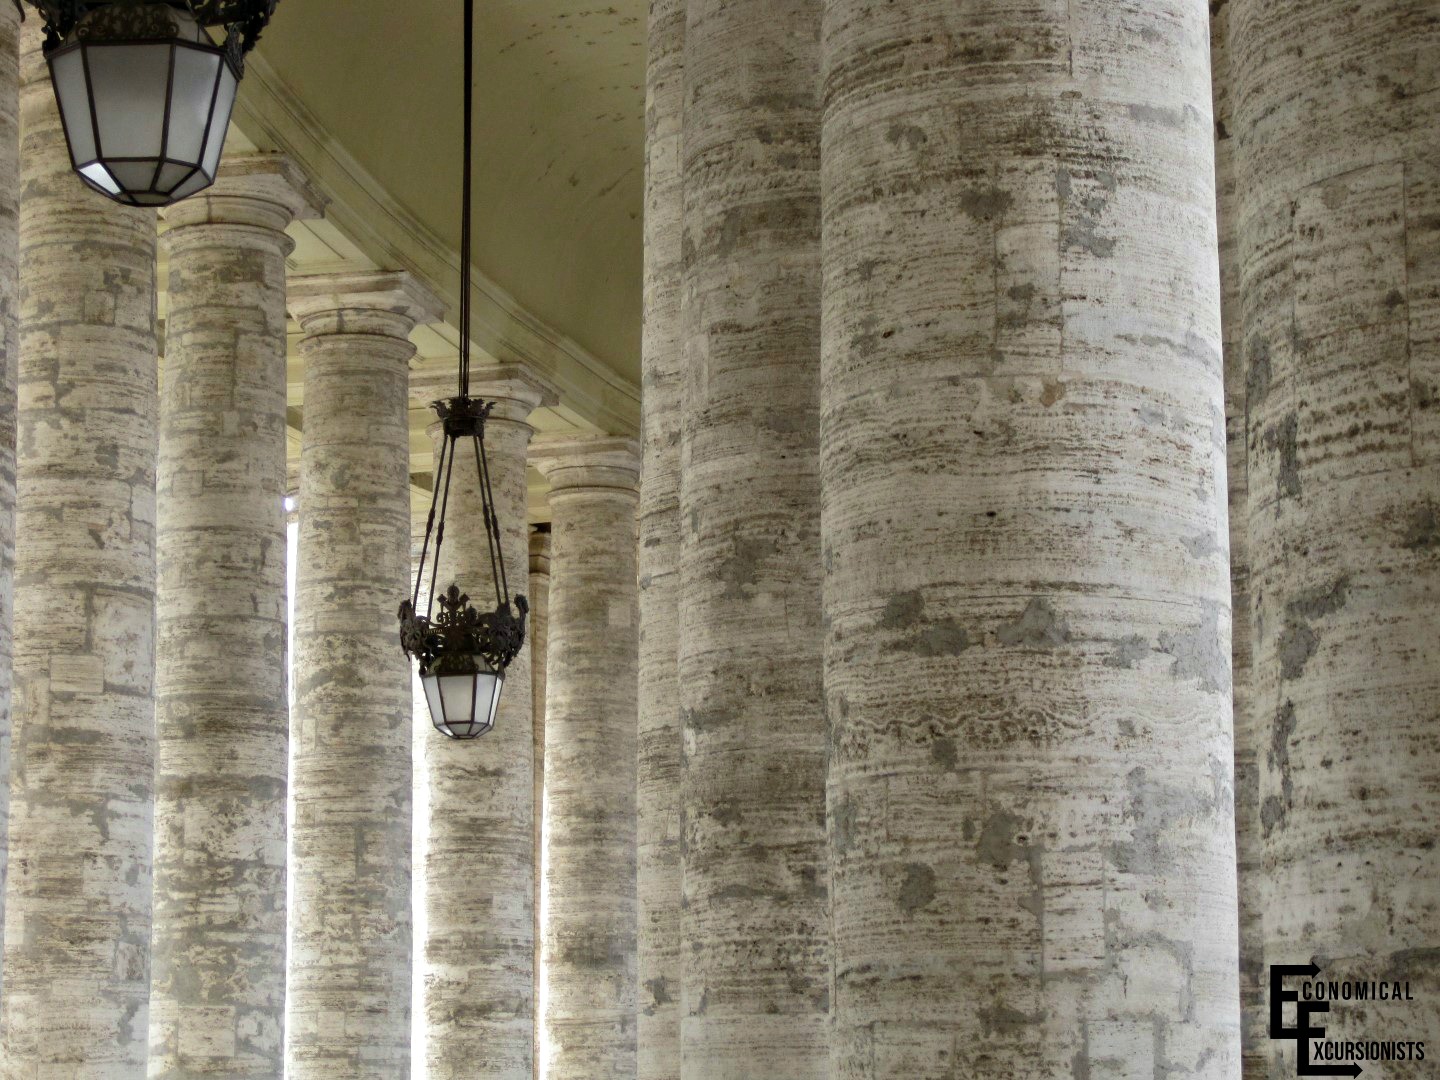 Vatican Columns